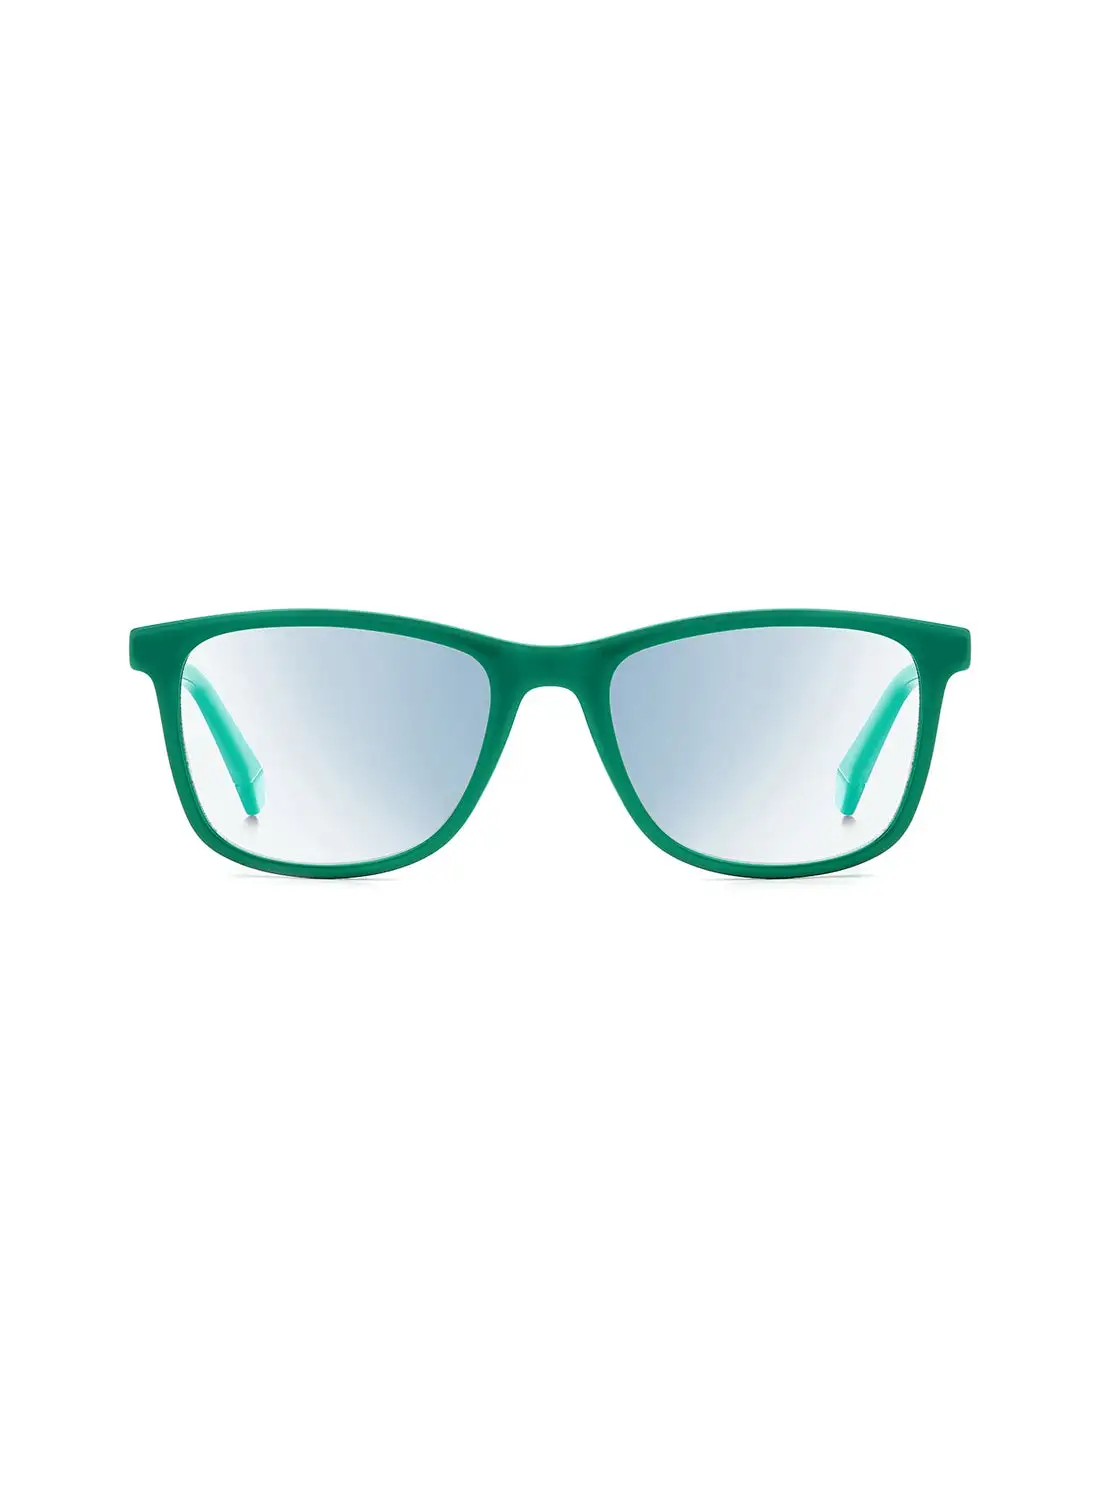 نظارات القراءة بولارويد للرجال - مقاس العدسة: مم